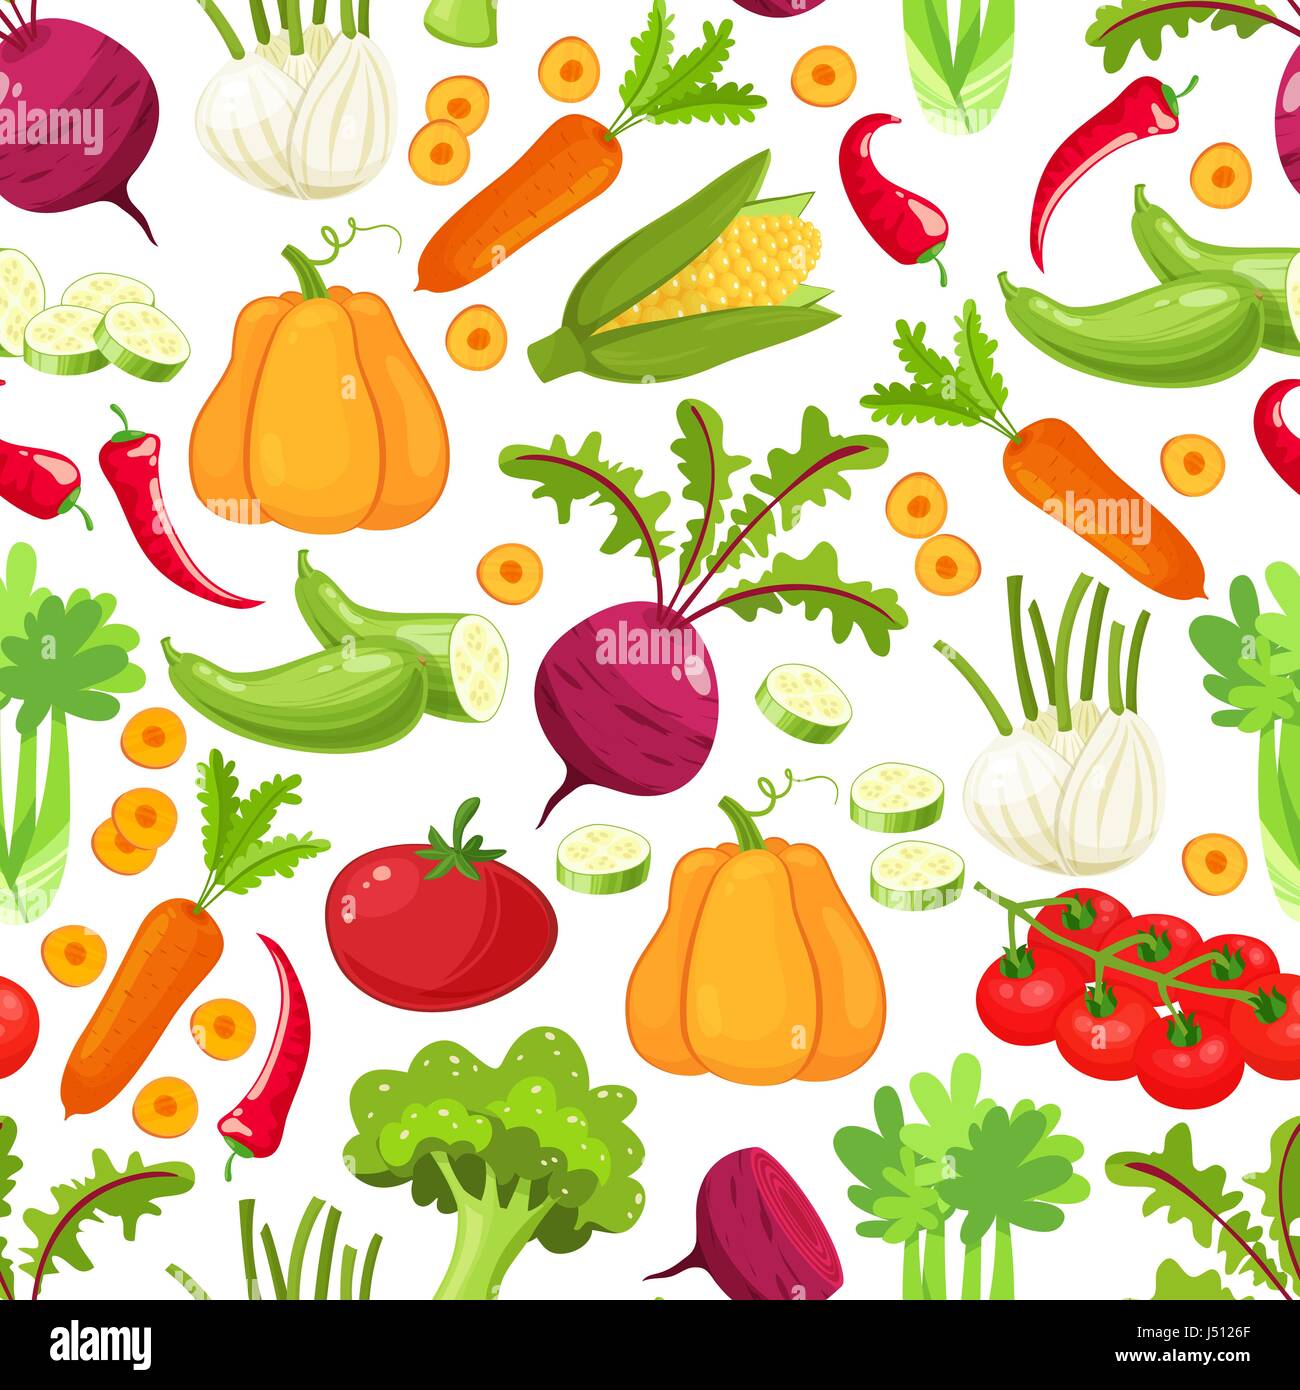 Las verduras crudas con rodajas de pimiento ajo berenjena calabacín champiñones cebolla tomate pepino ilustración vectorial.patrón sin fisuras sobre un fondo blanco , verduras ilustraciones Ilustración del Vector